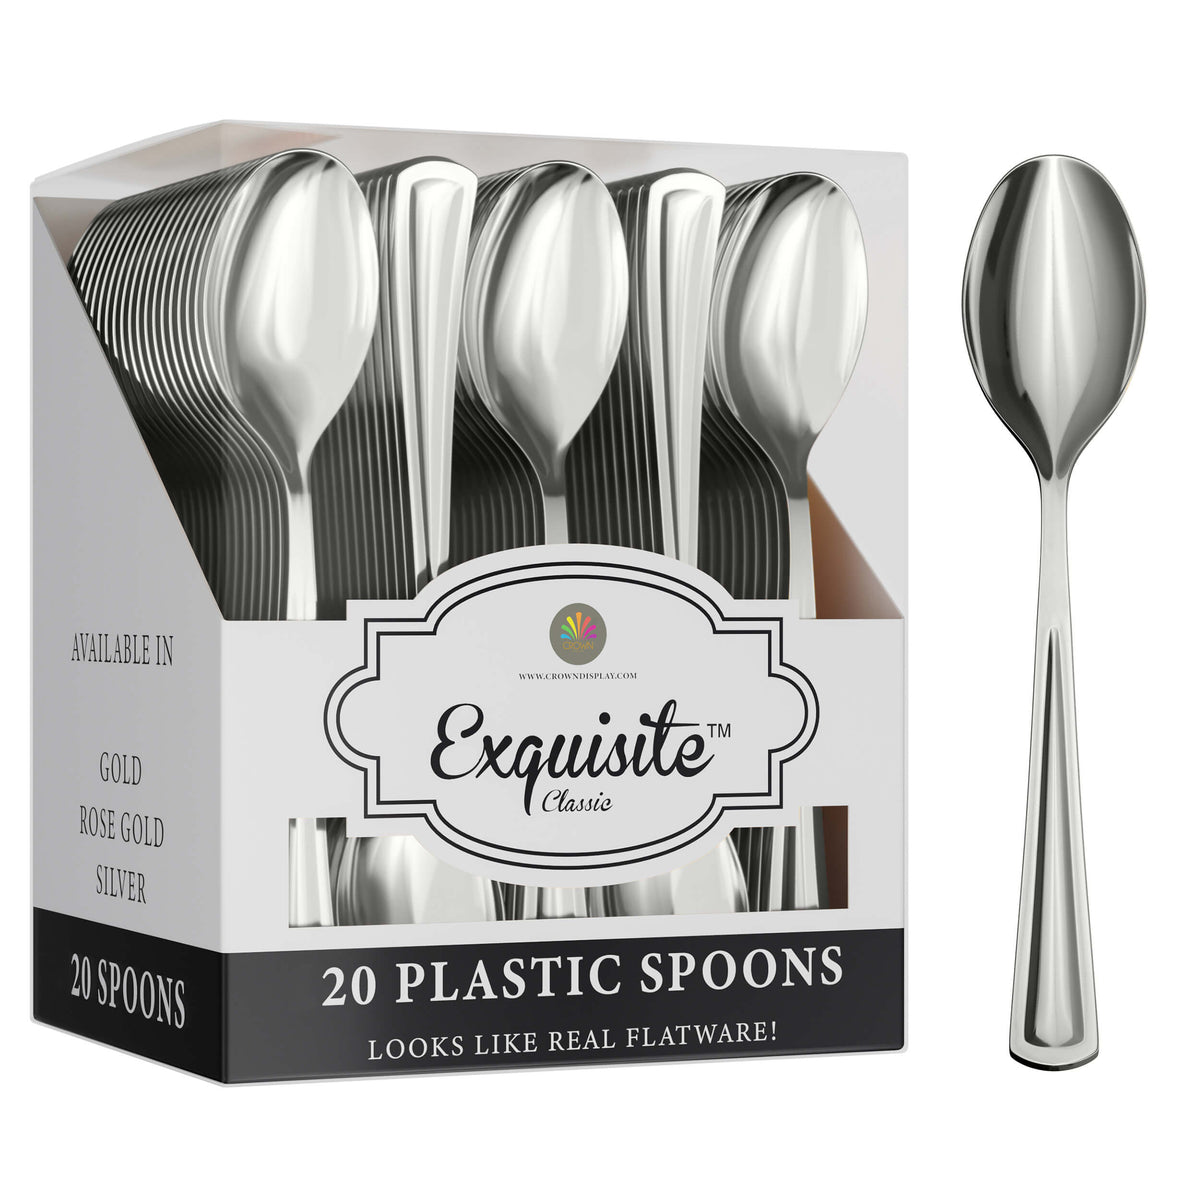 Exquisite Classic Silver Plastic Spoons | 20 Count